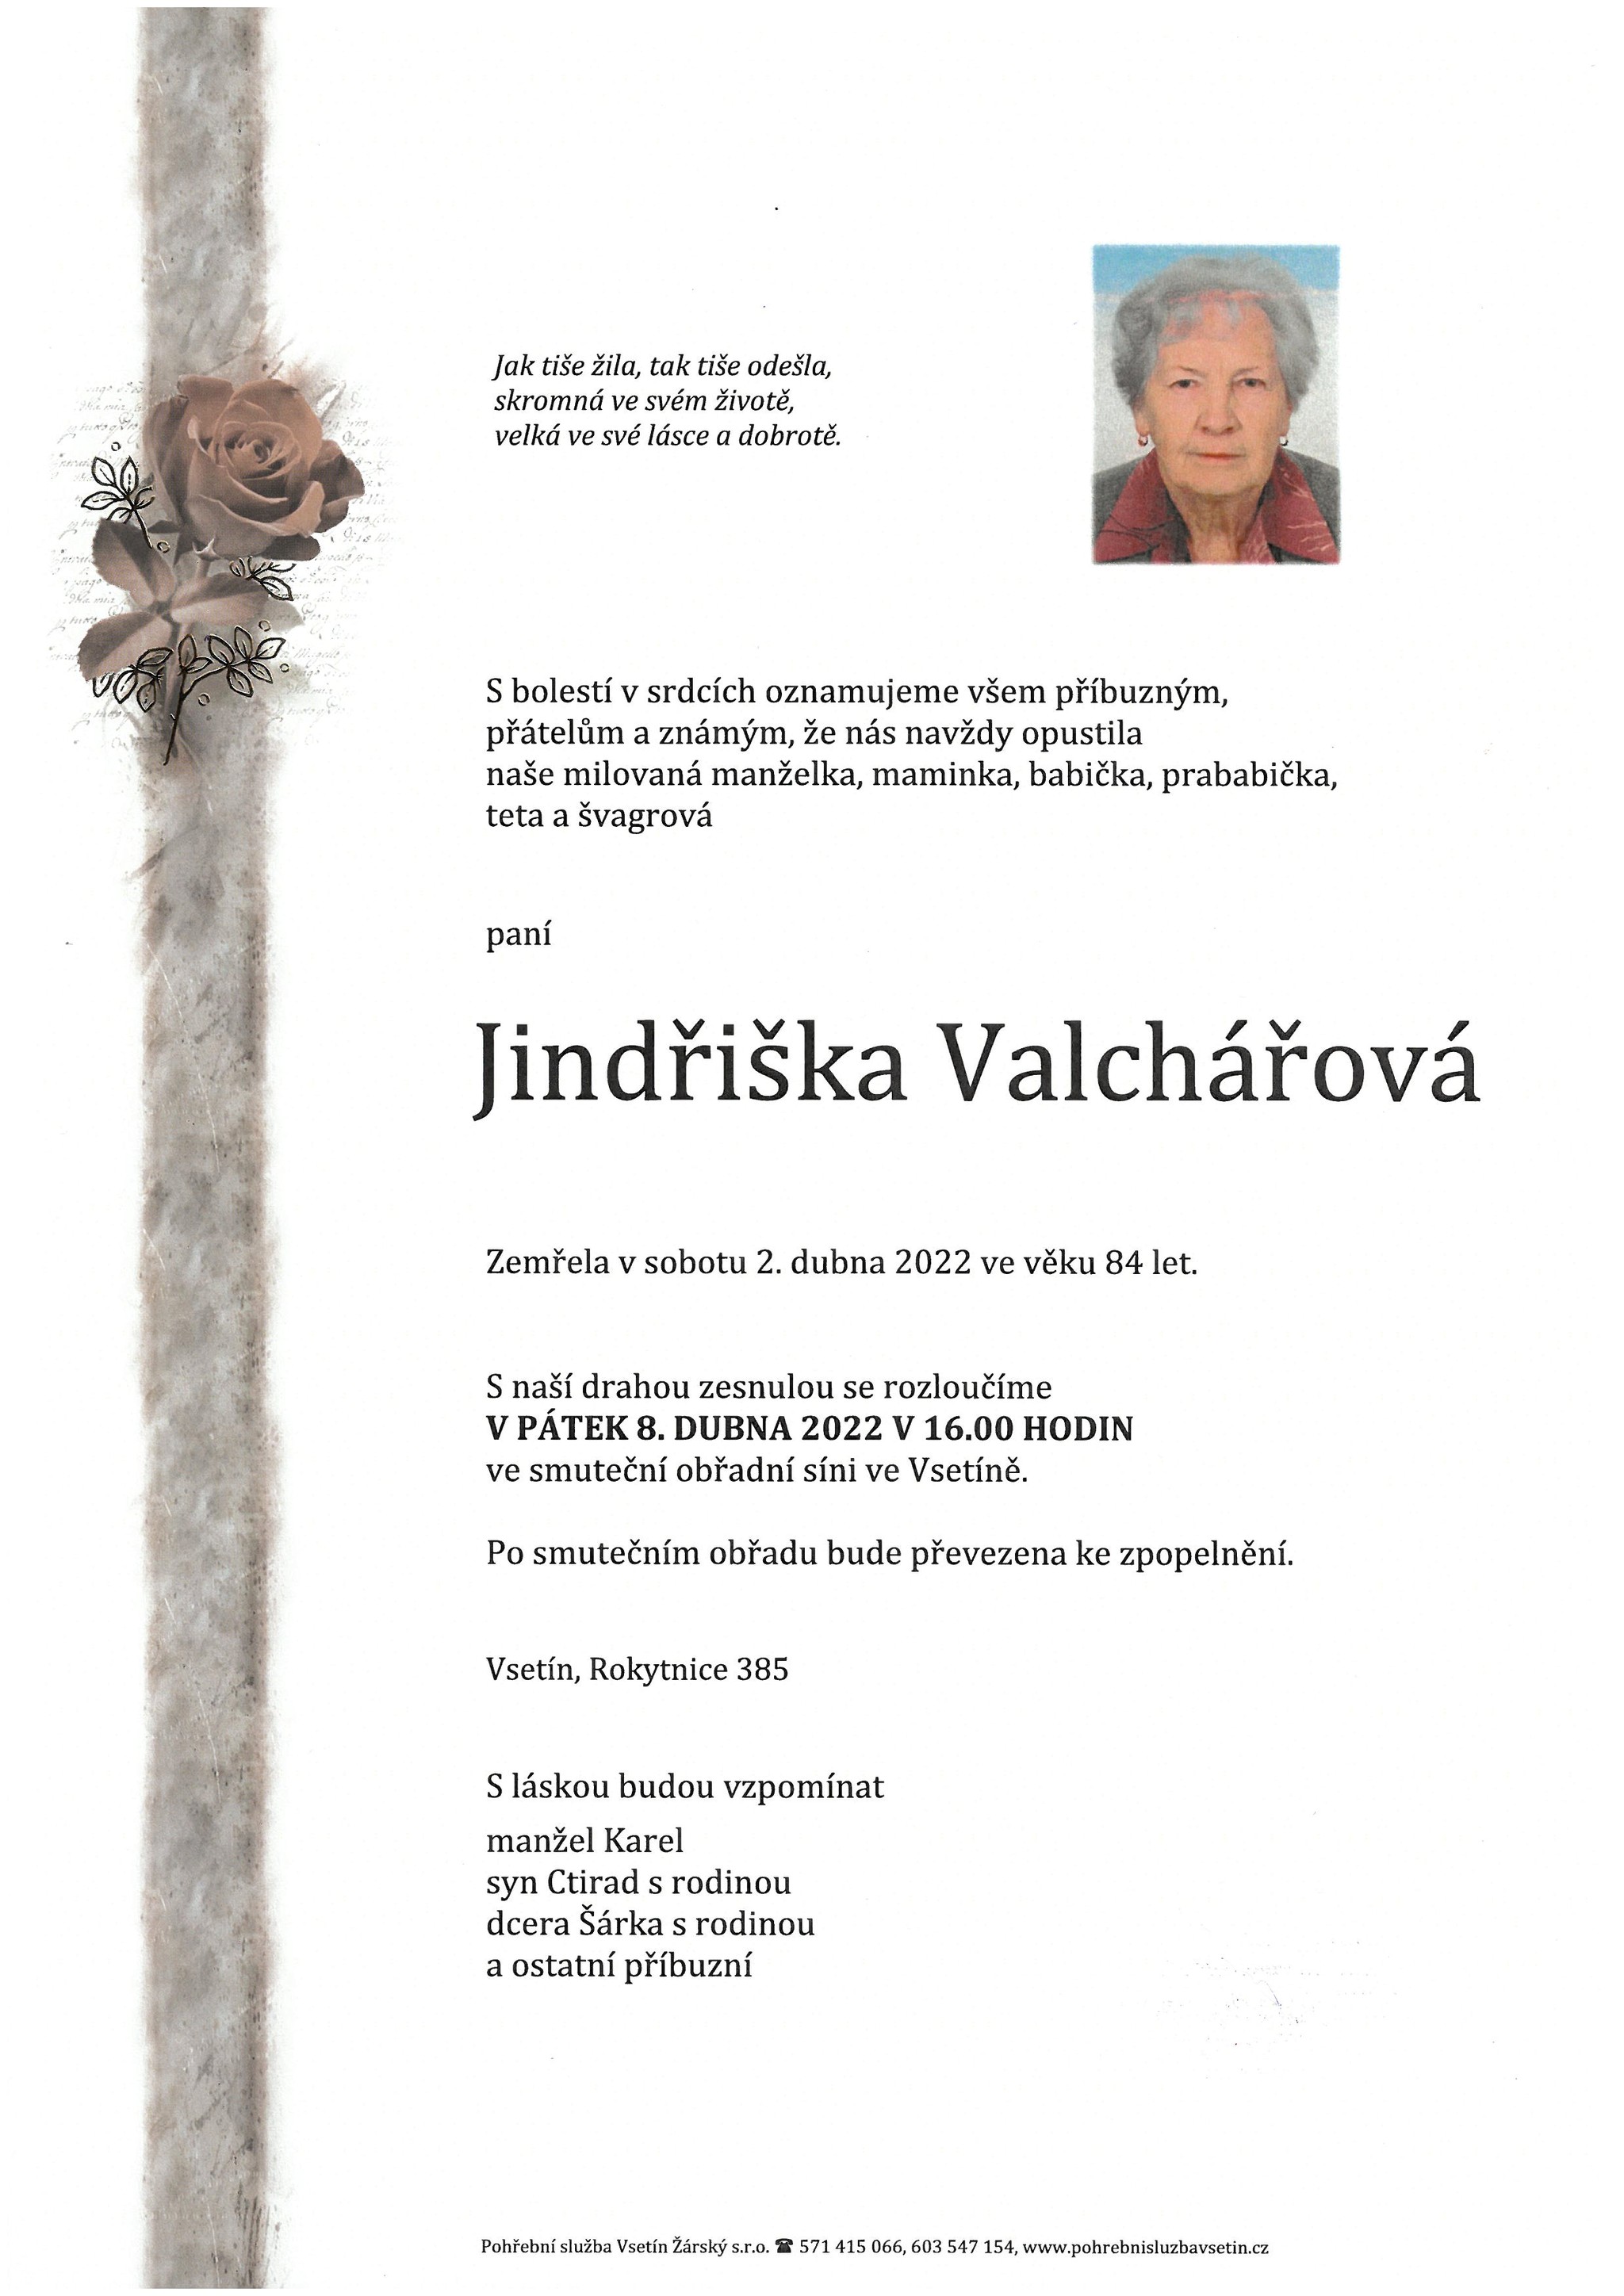 Jindřiška Valchářová